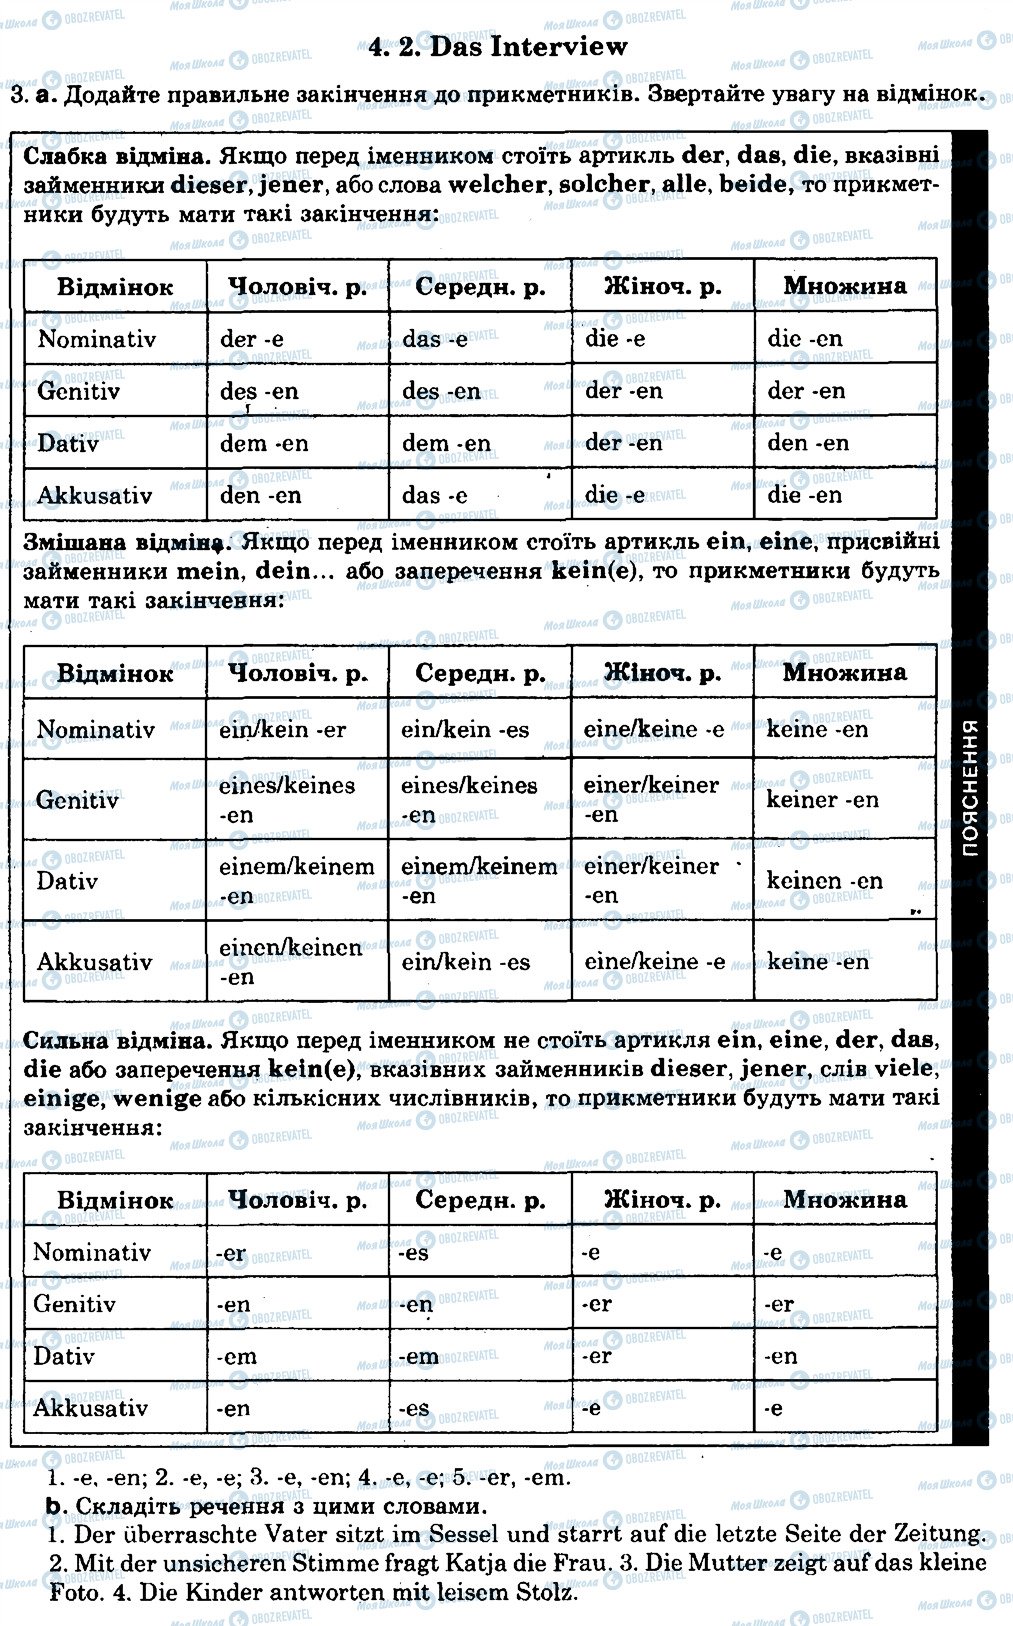 ГДЗ Німецька мова 8 клас сторінка 4.2